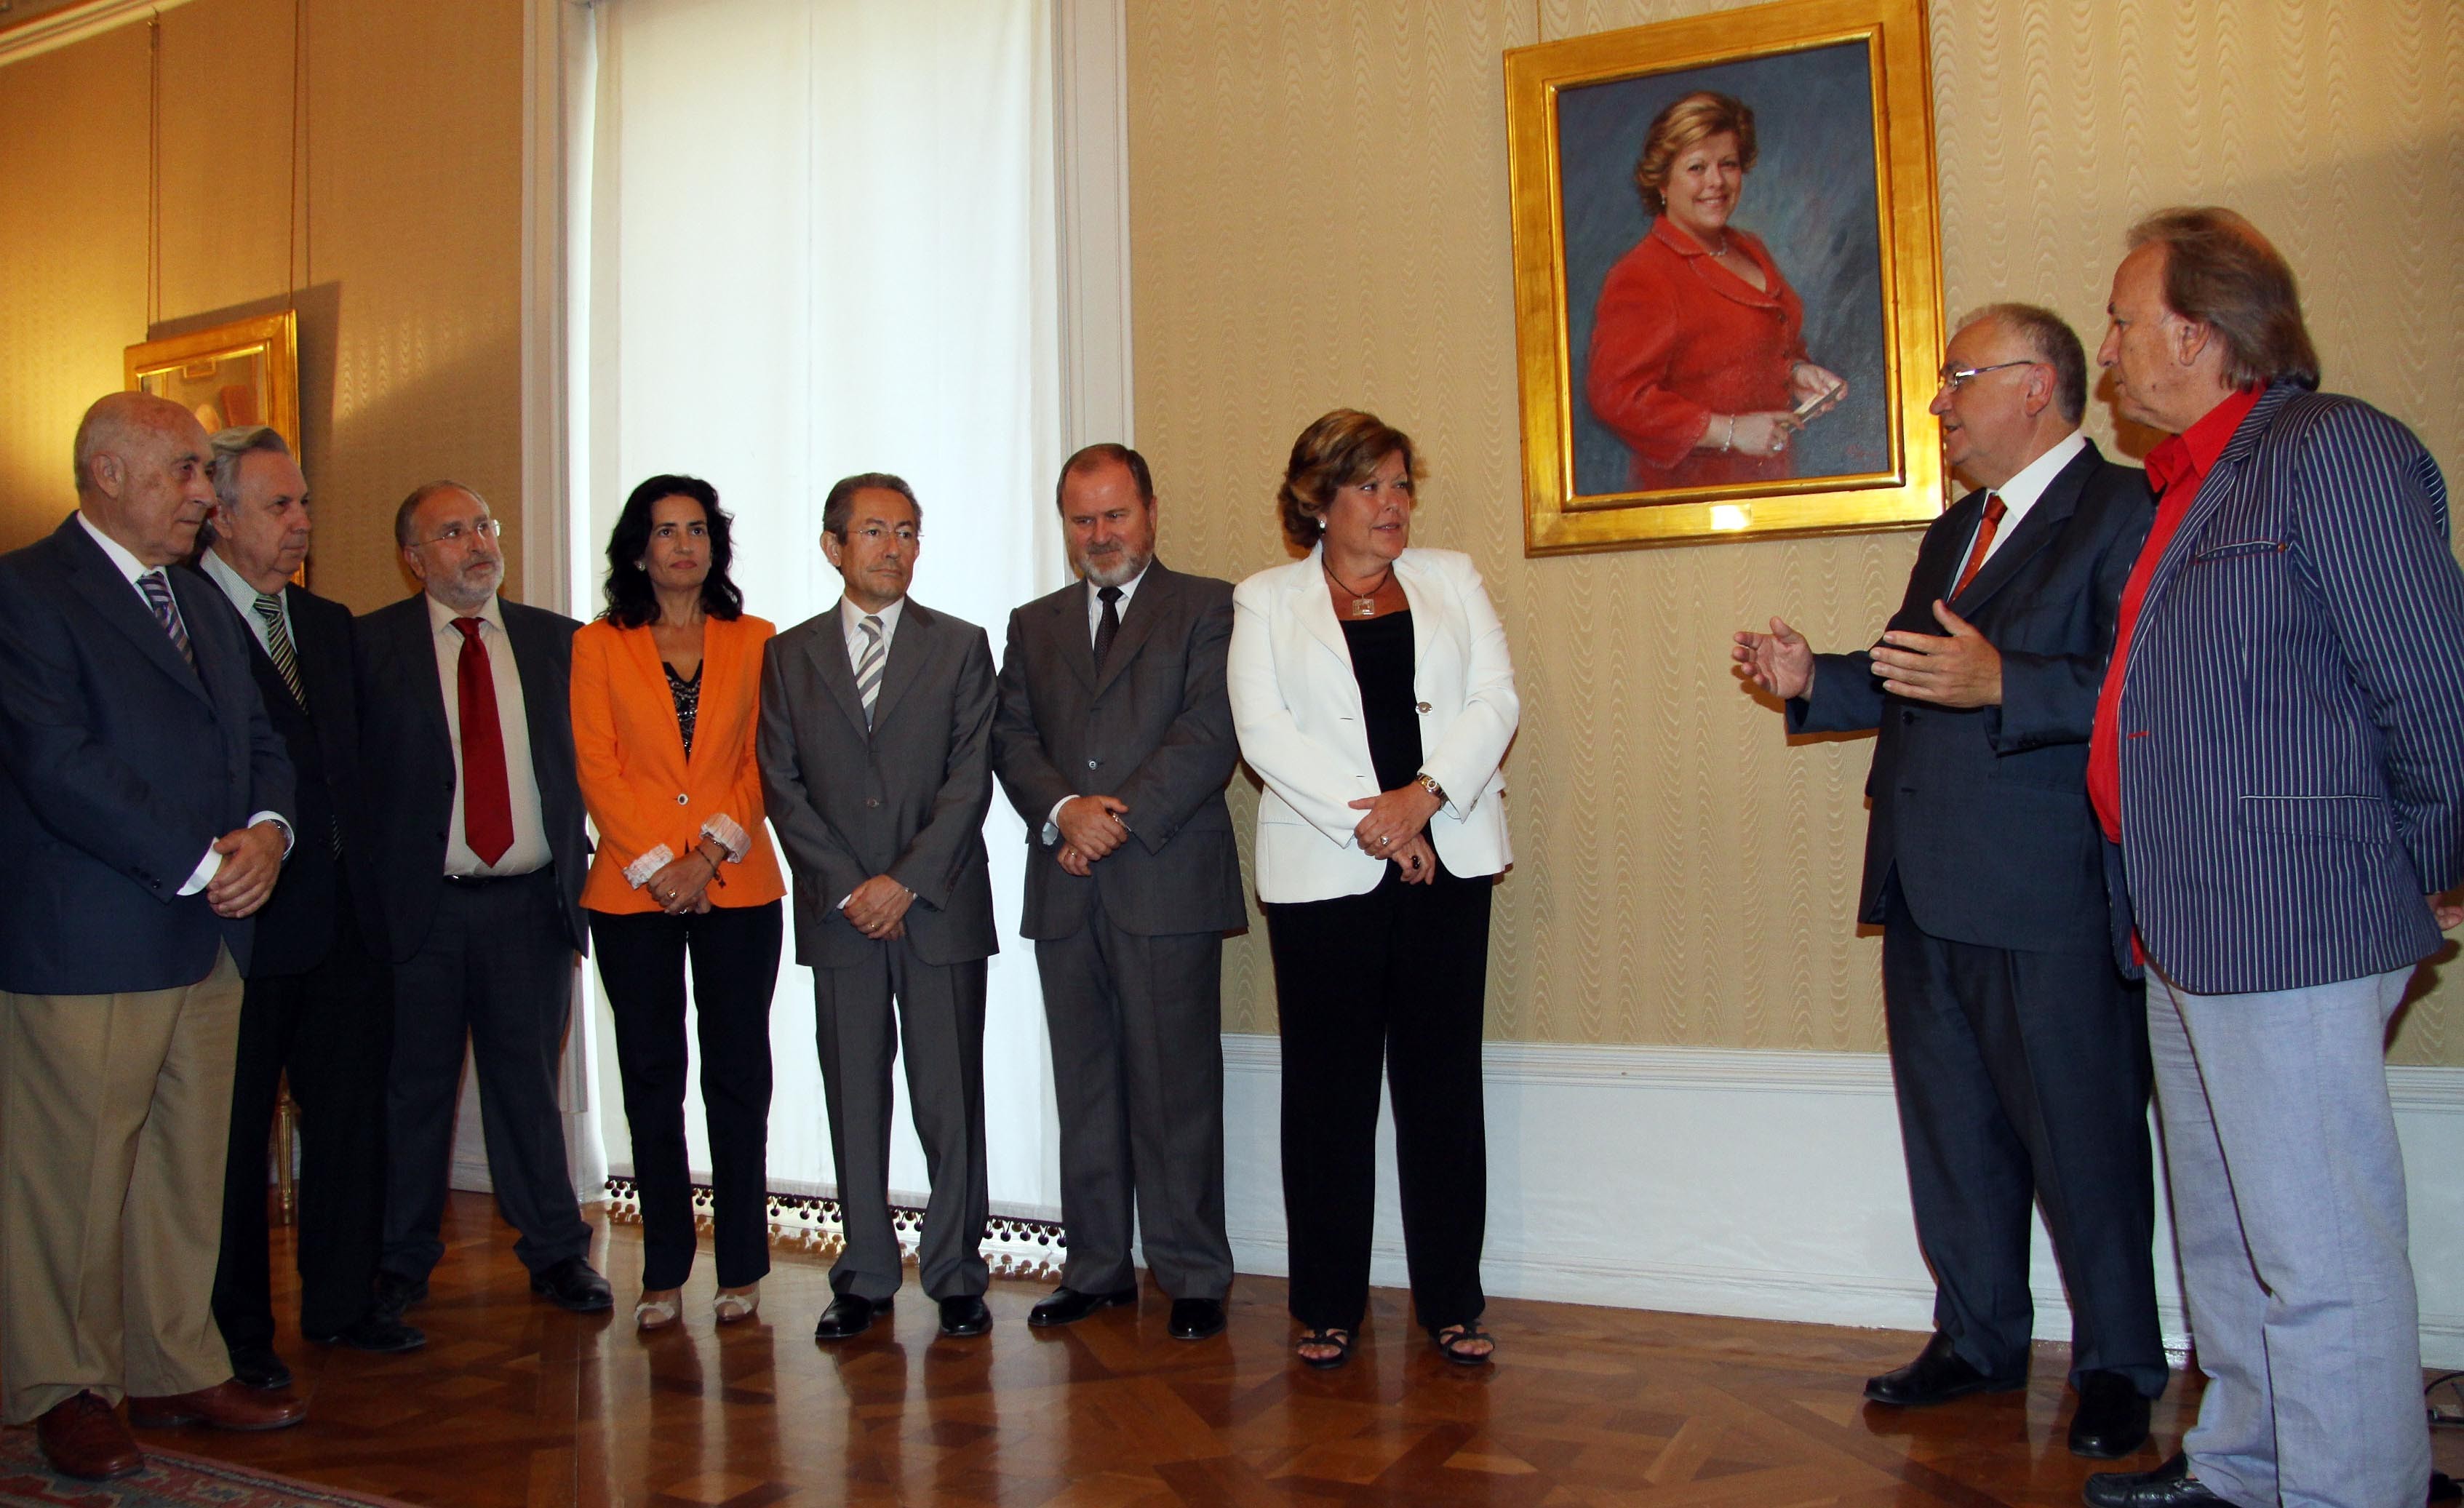 El síndic de Greuges asiste a la colocación del retrato de la presidenta de Les Corts durante la VII legislatura, Milagrosa Martínez